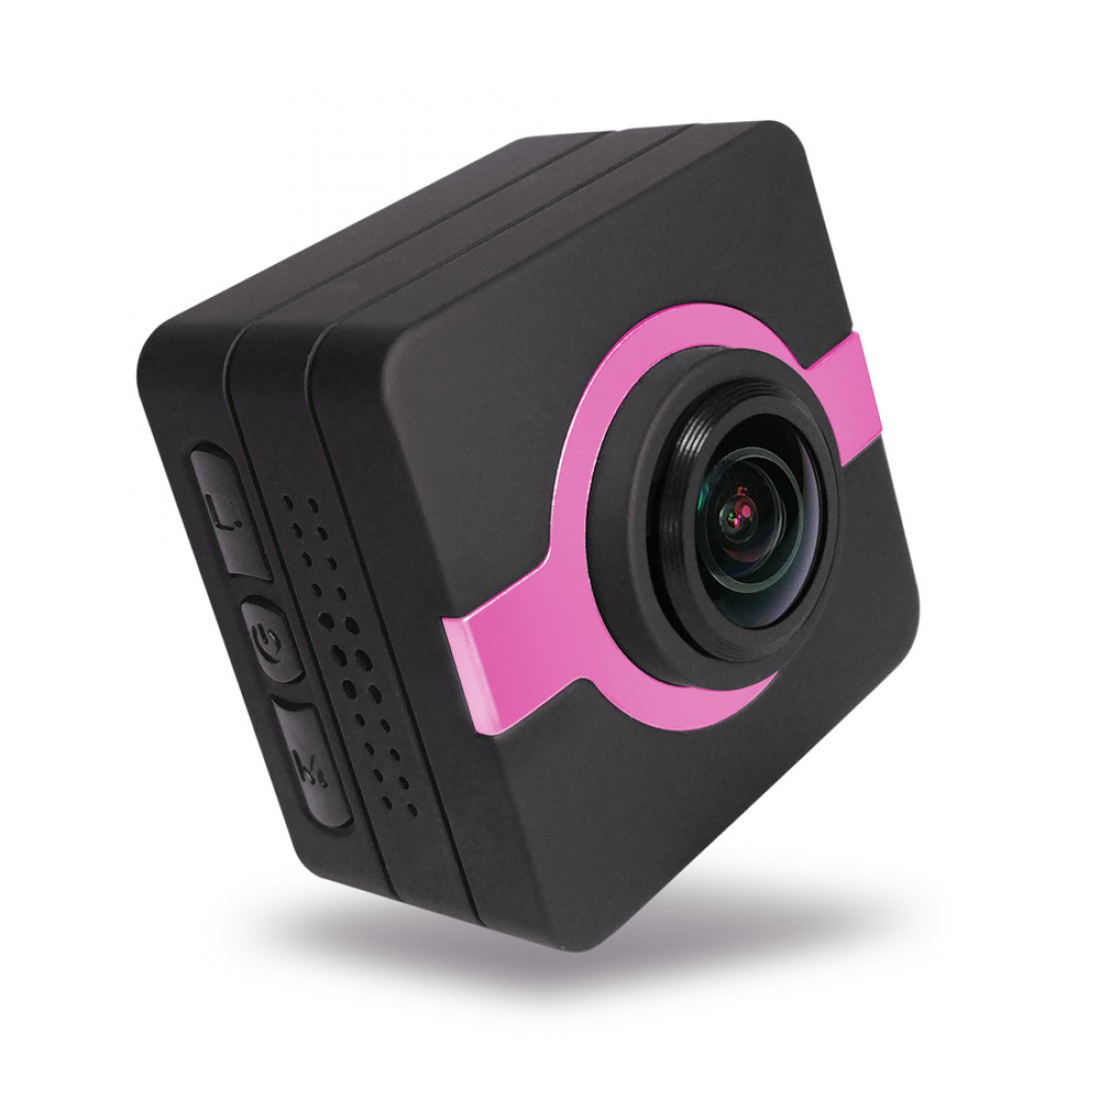 Matecam X1 迷你 DVR Wifi APP 高清 1080P 4K-HI 自行車頭盔凸輪運動 DV 動作 DVR 防水行車記錄儀索尼鏡頭 FHD 車載行車記錄儀運動相機凸輪攝像機黑色框紅色